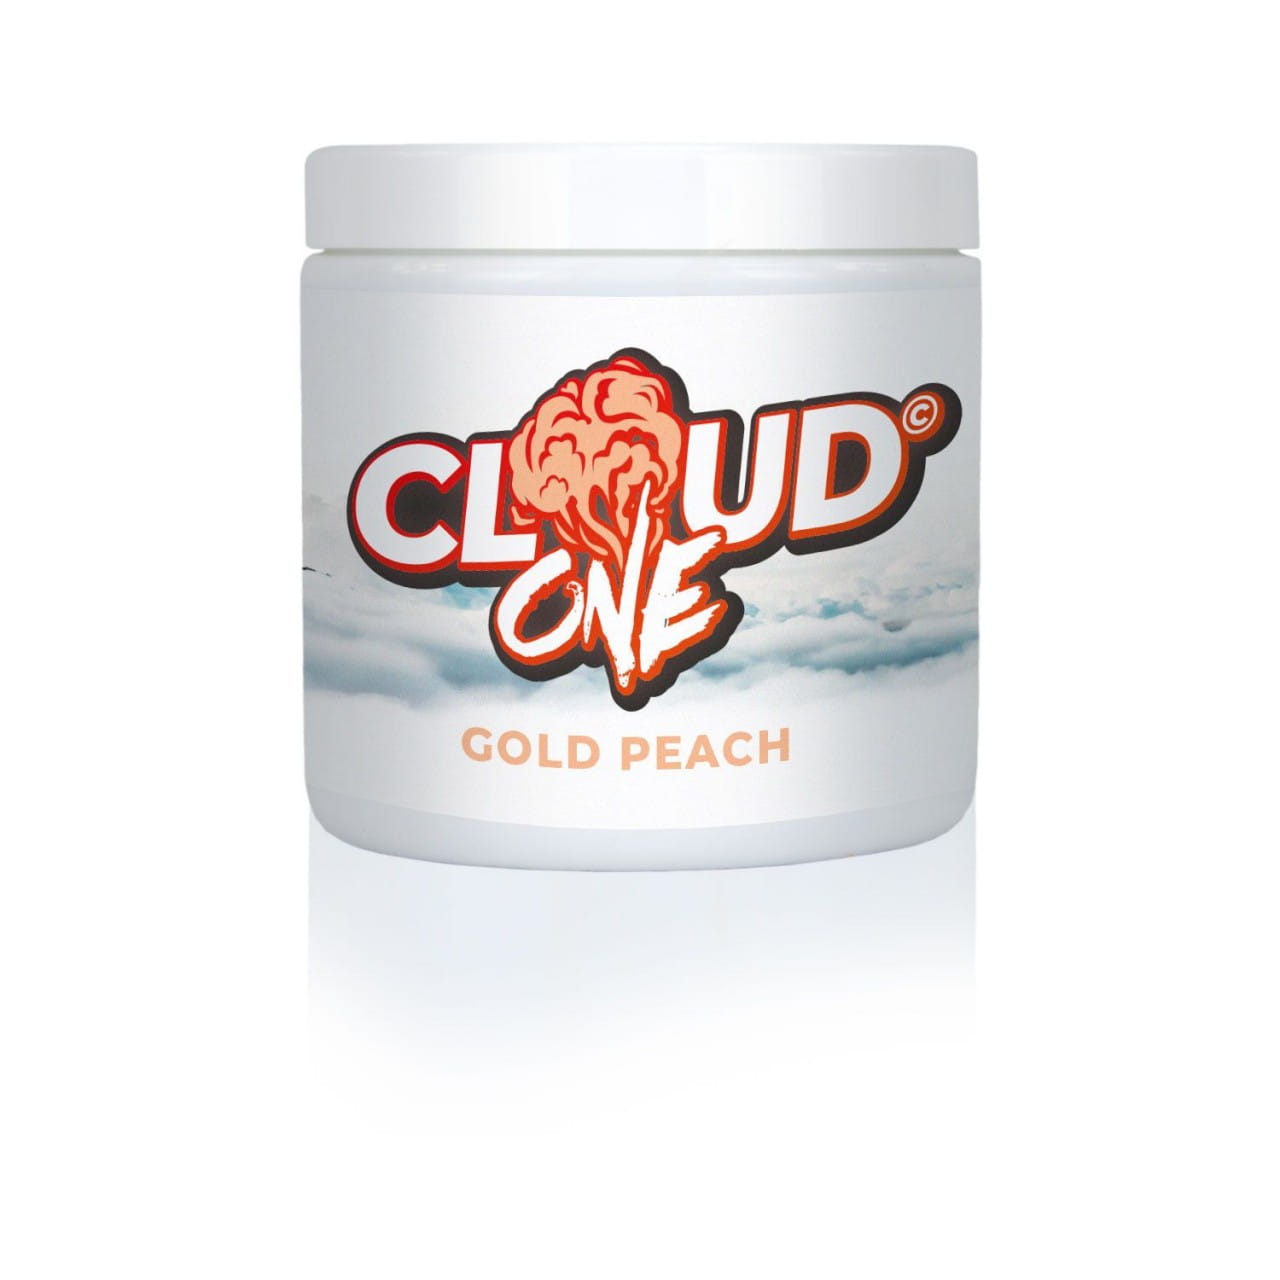 Cloud One - Gold Peach 200 g